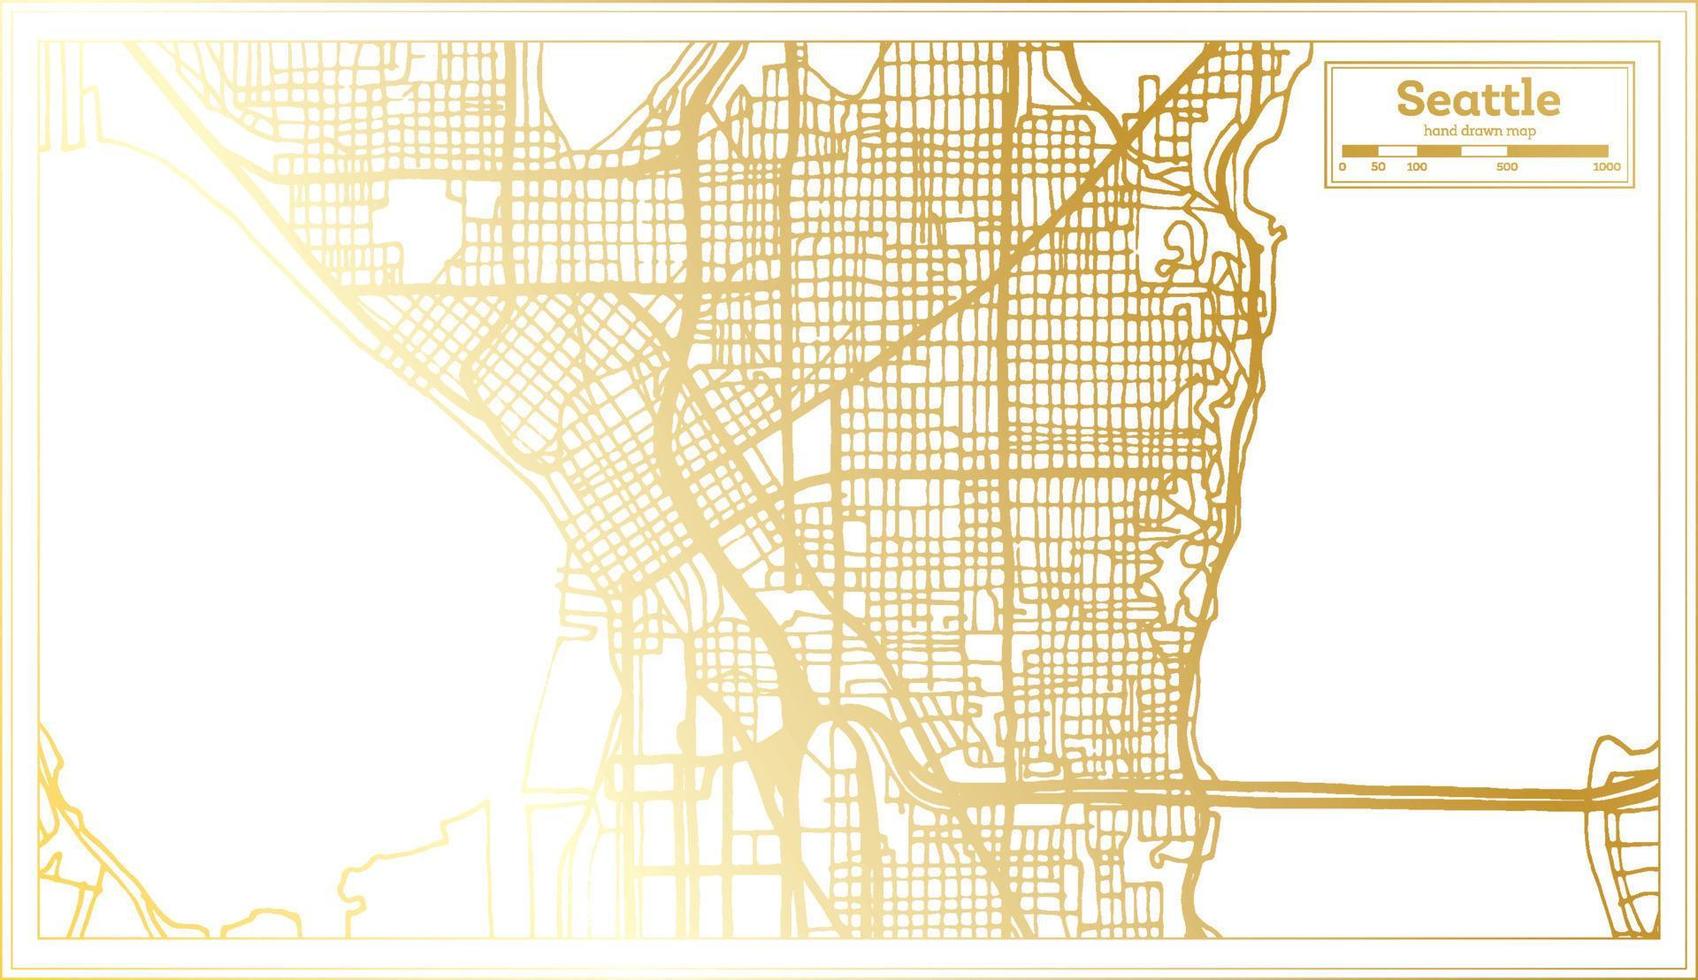 Seattle Verenigde Staten van Amerika stad kaart in retro stijl in gouden kleur. schets kaart. vector